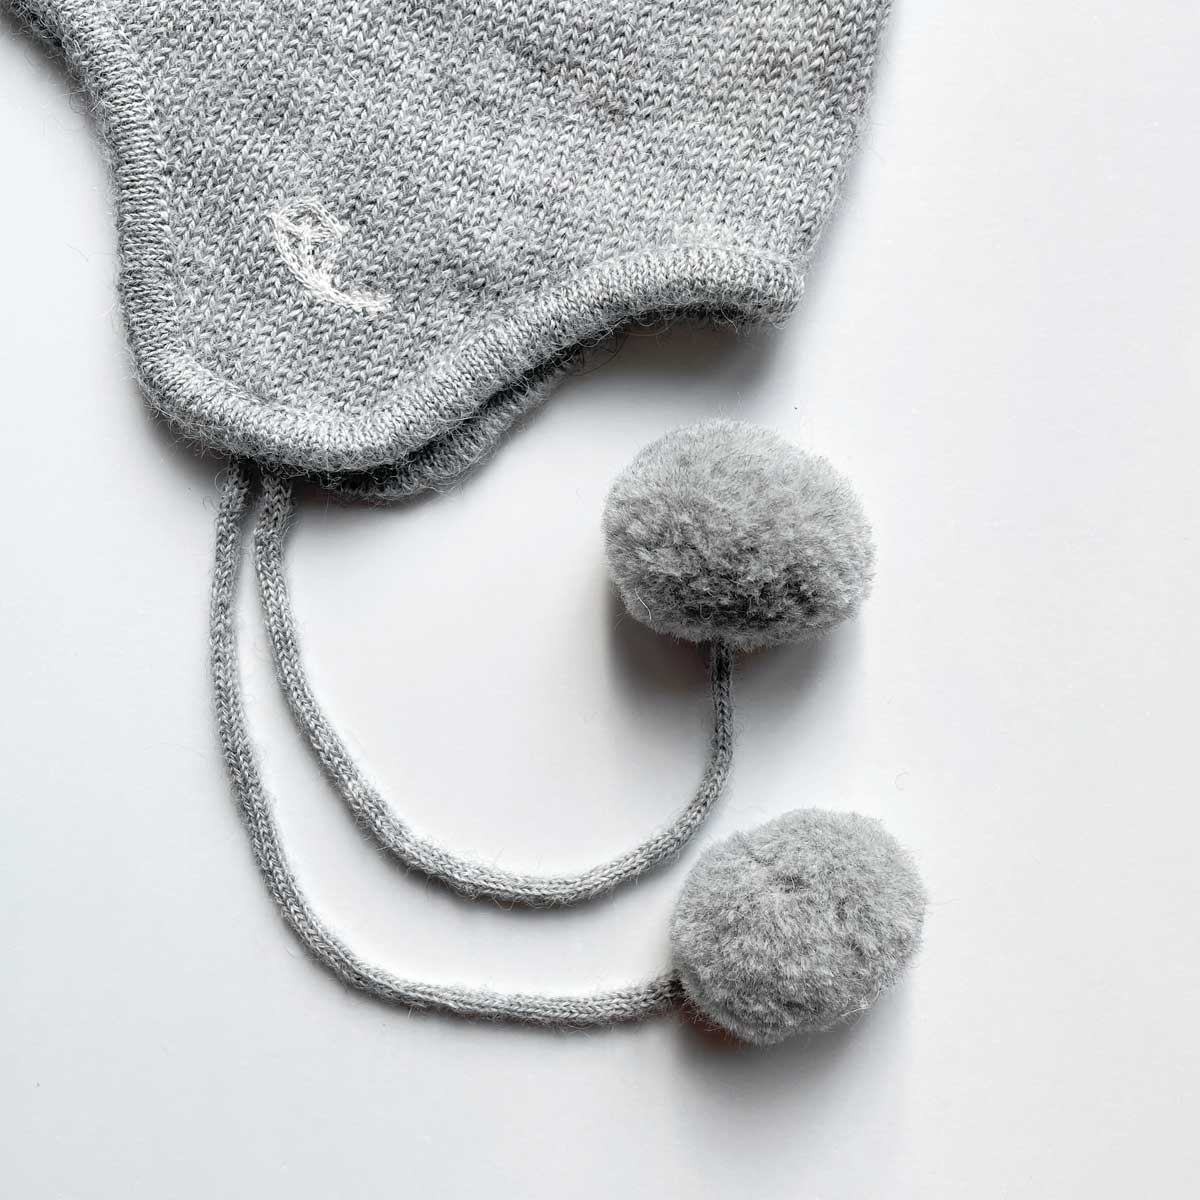 Niseko Baby Hat